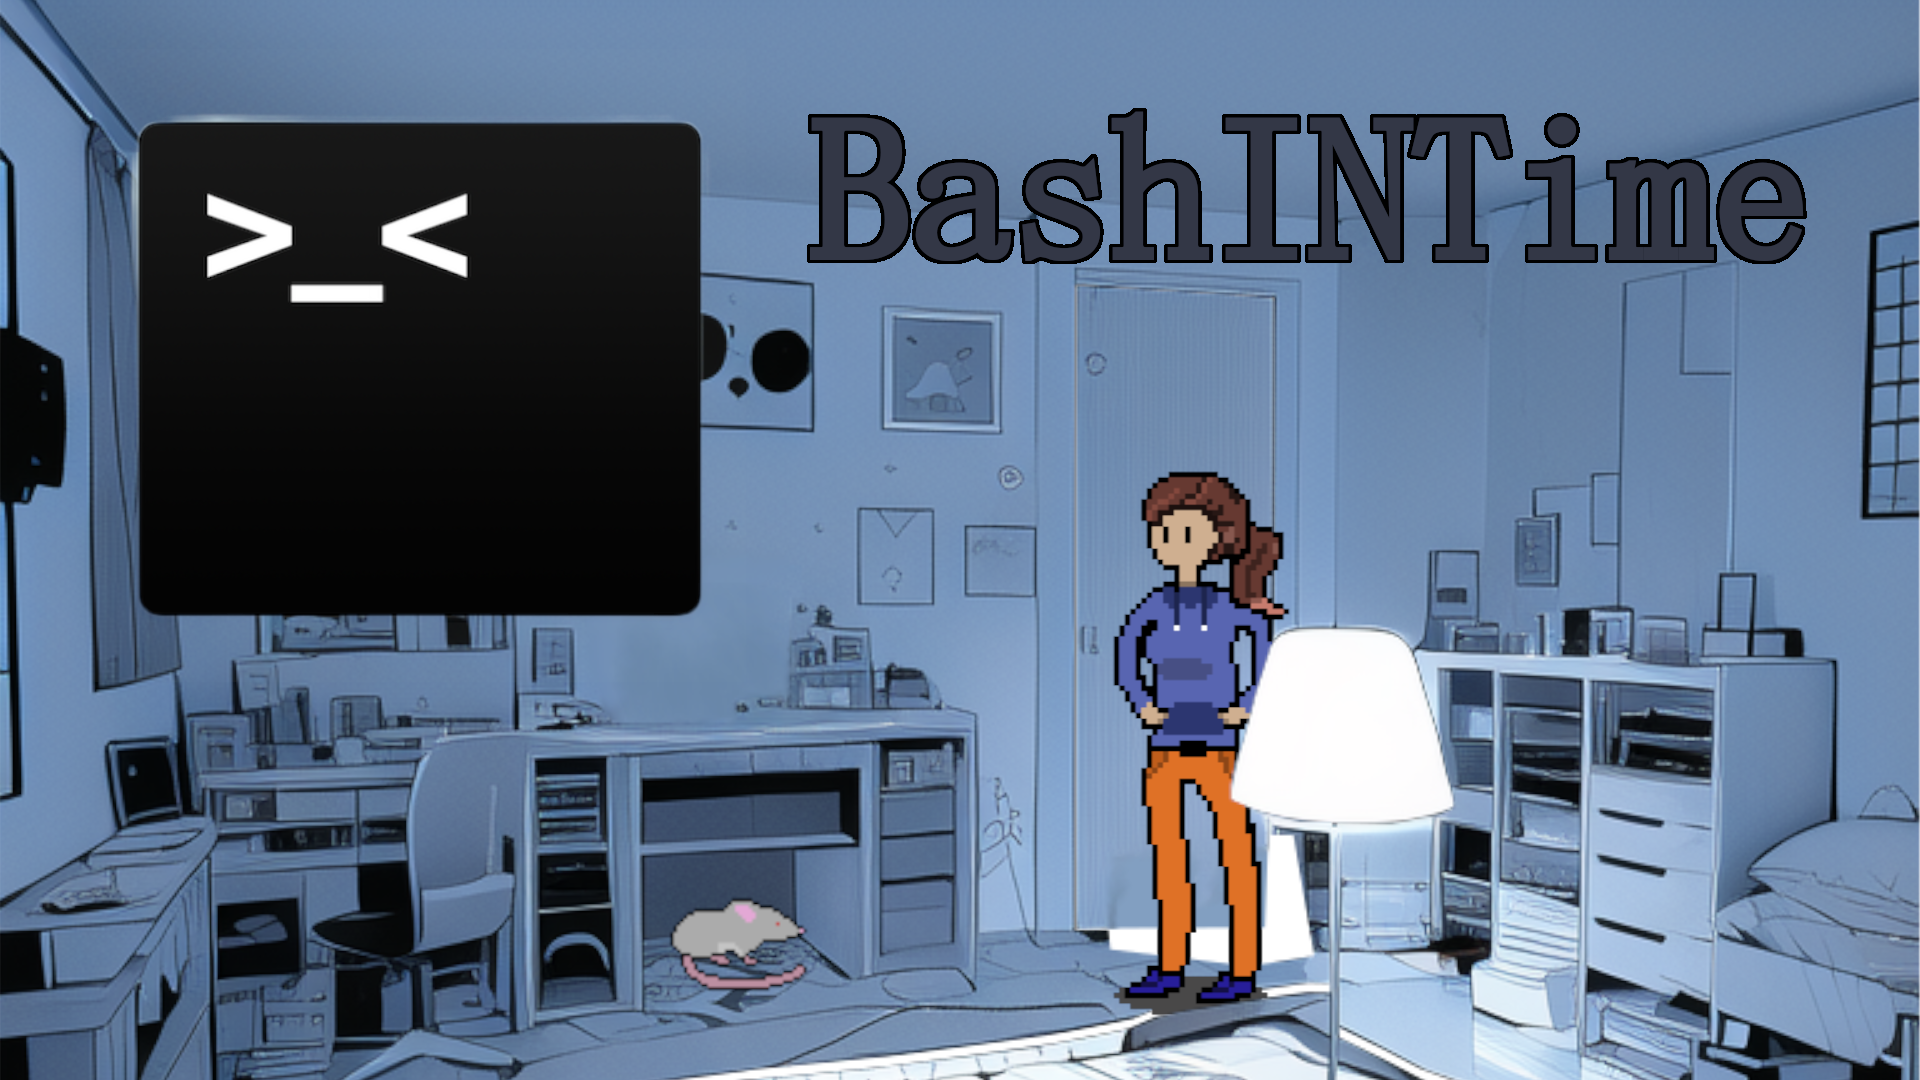 BashINTime